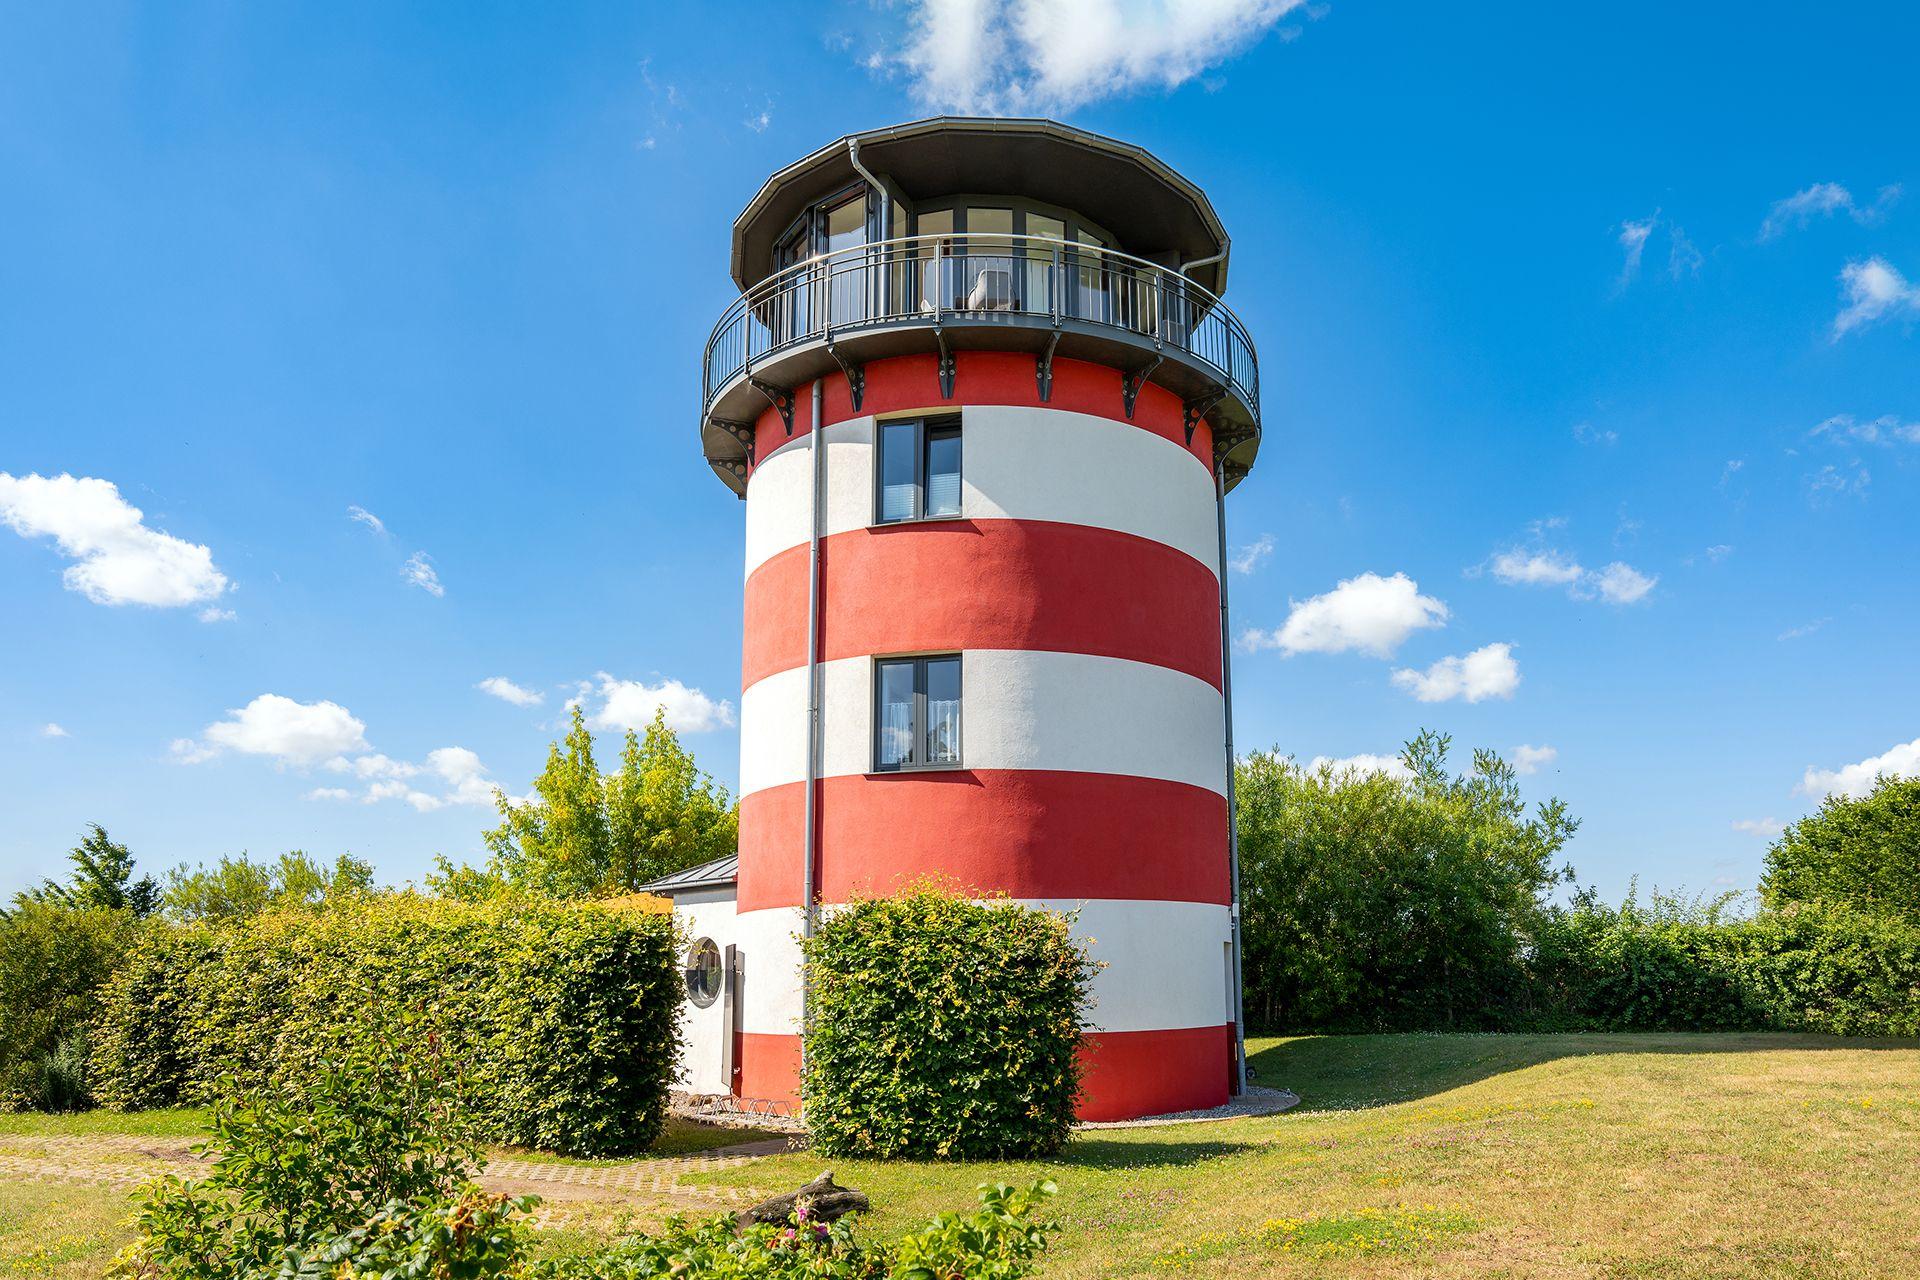 Leuchty - Wohnleuchtturm Ferienhaus in Deutschland